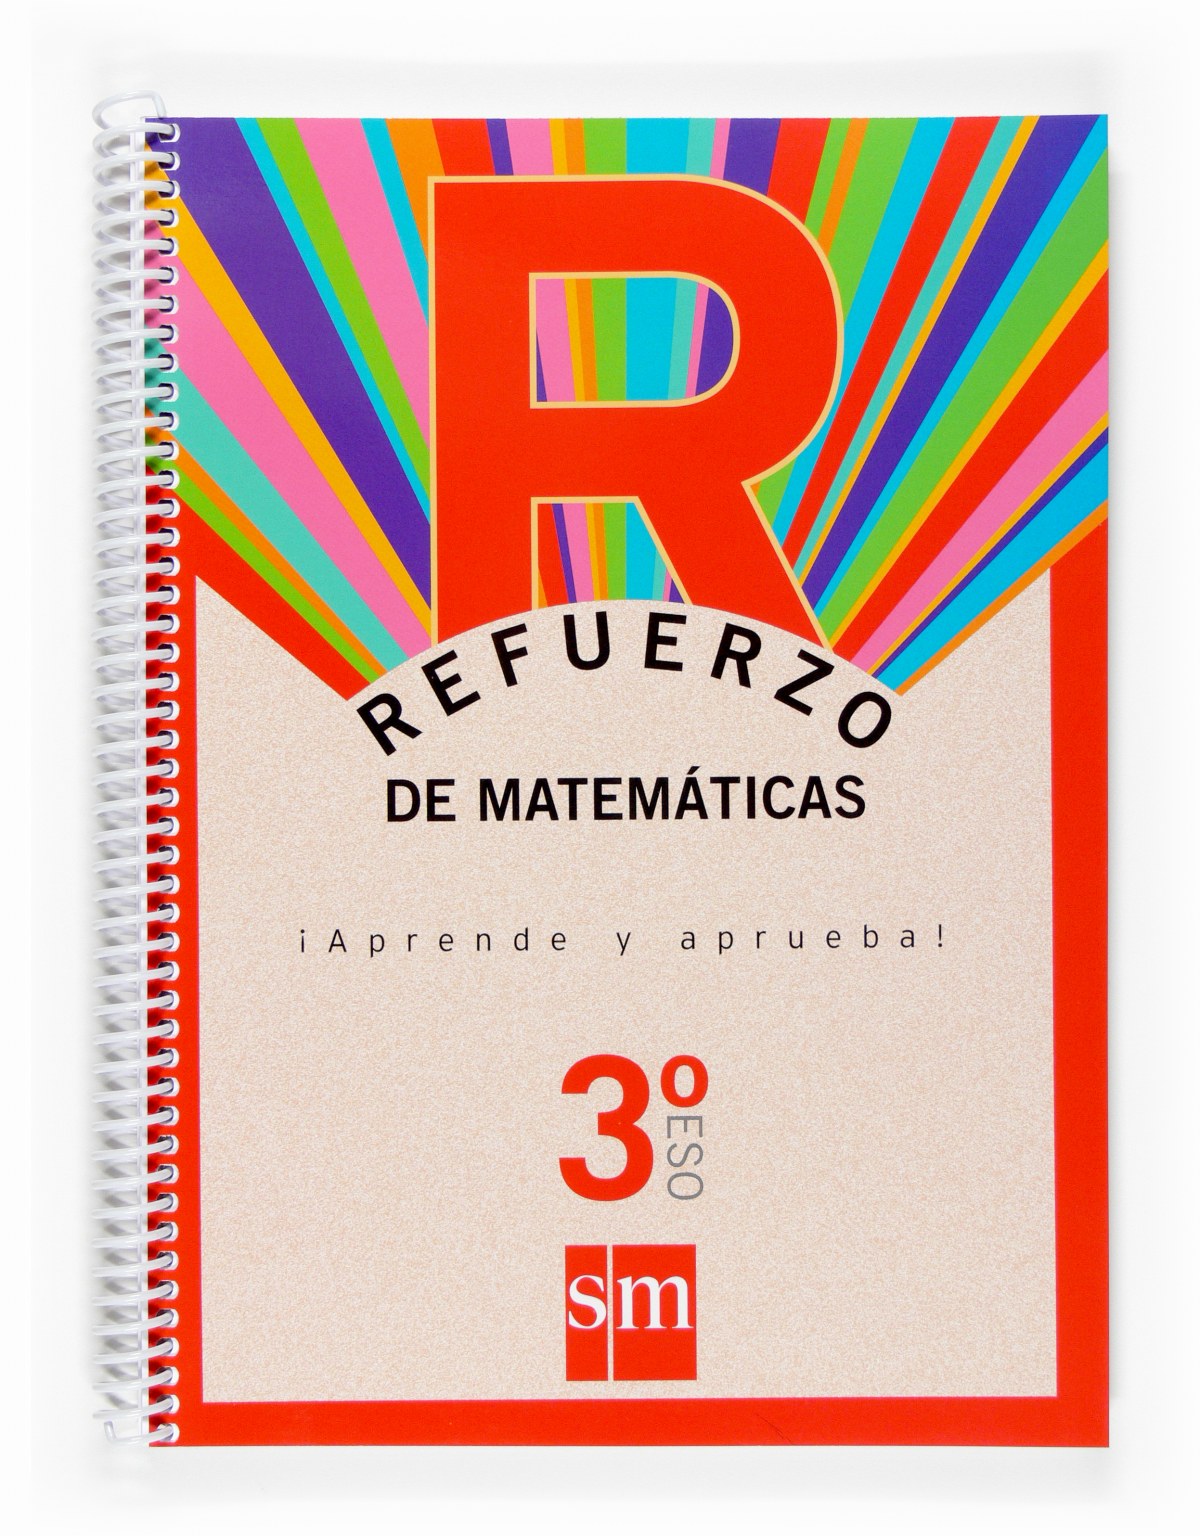 Refuerzo de matemáticas. ¡Aprende y aprueba! 3ºESO - de los Santos, Mª Isabel/Martínez, Rafael Ángel